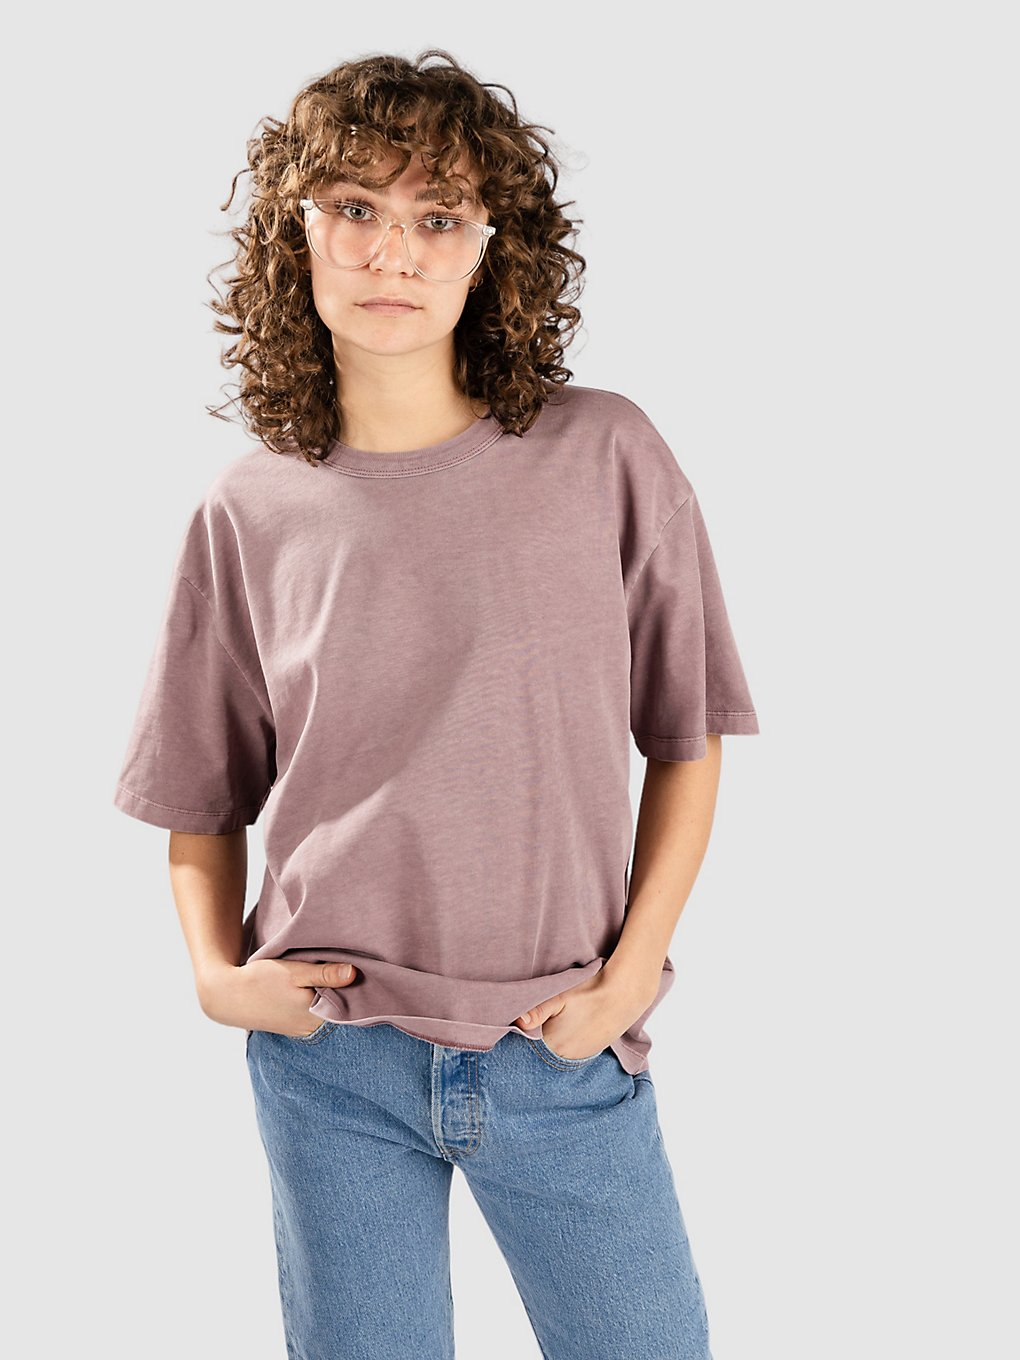 Carhartt WIP Taos T-Shirt daphne garment dyed kaufen